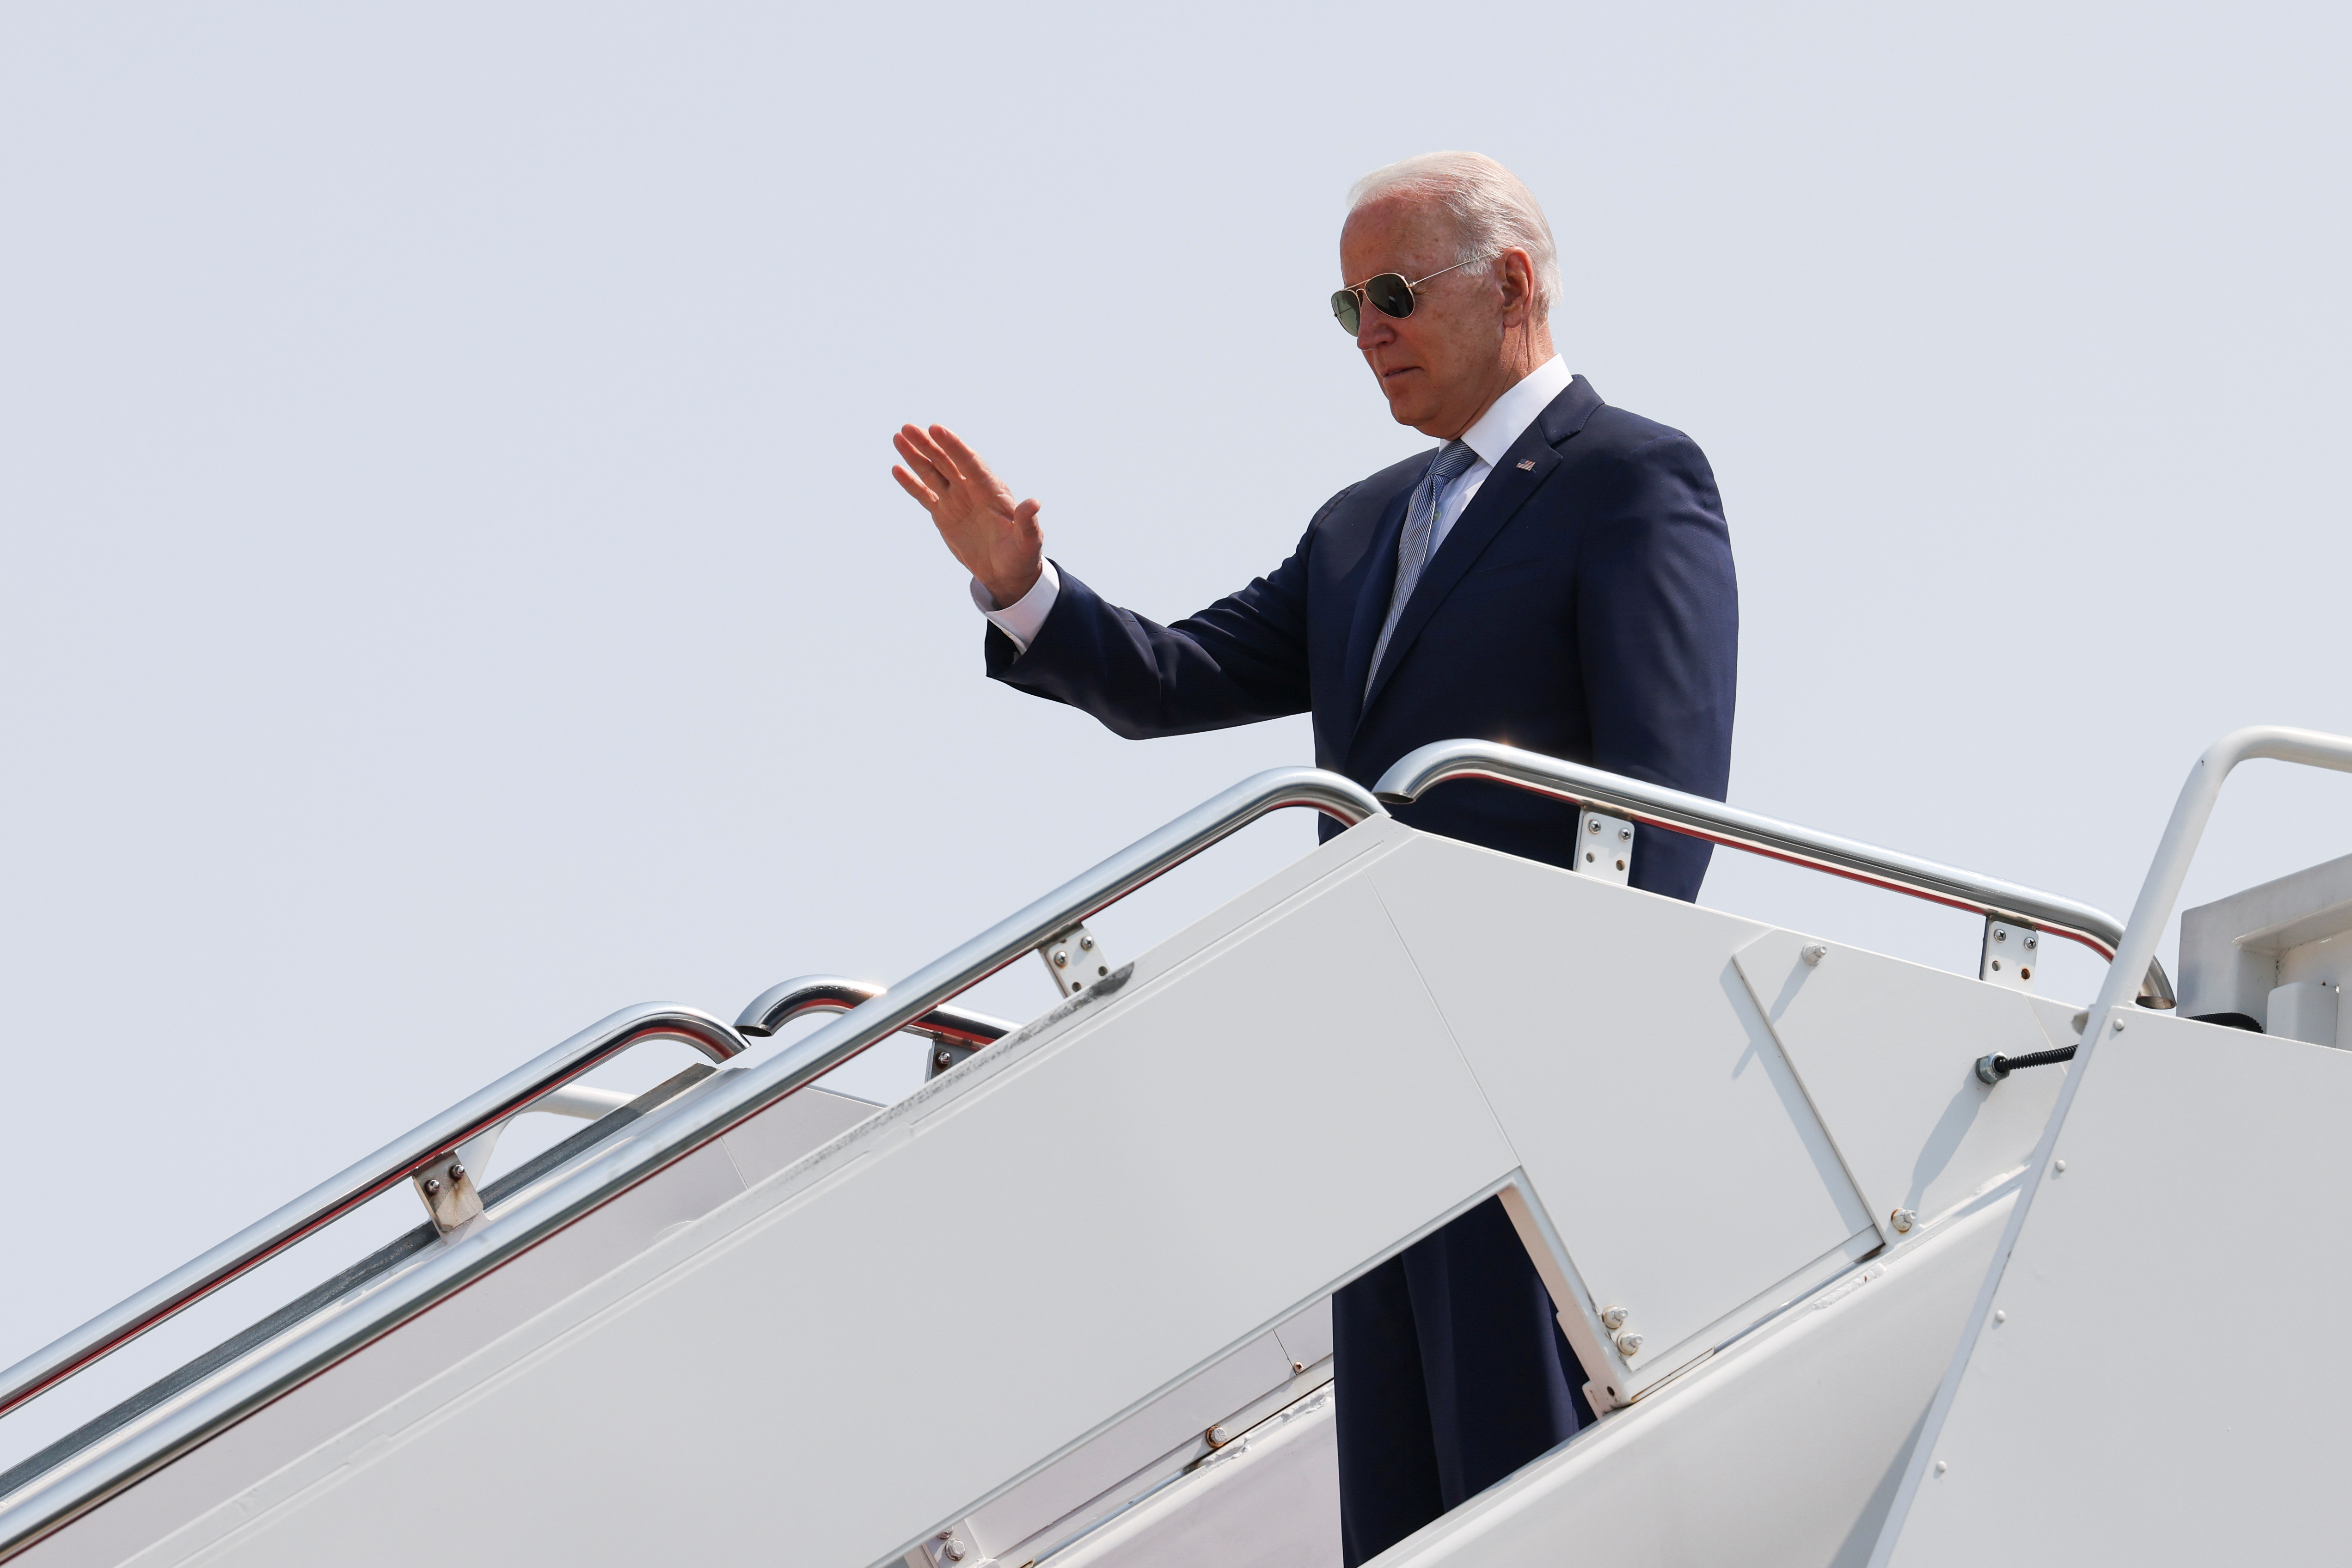 Foto de archivo: El presidente de EEUU, Joe Biden, saluda con la mano mientras sube al avión presidencial Air Force One (REUTERS/Evelyn Hockstein)